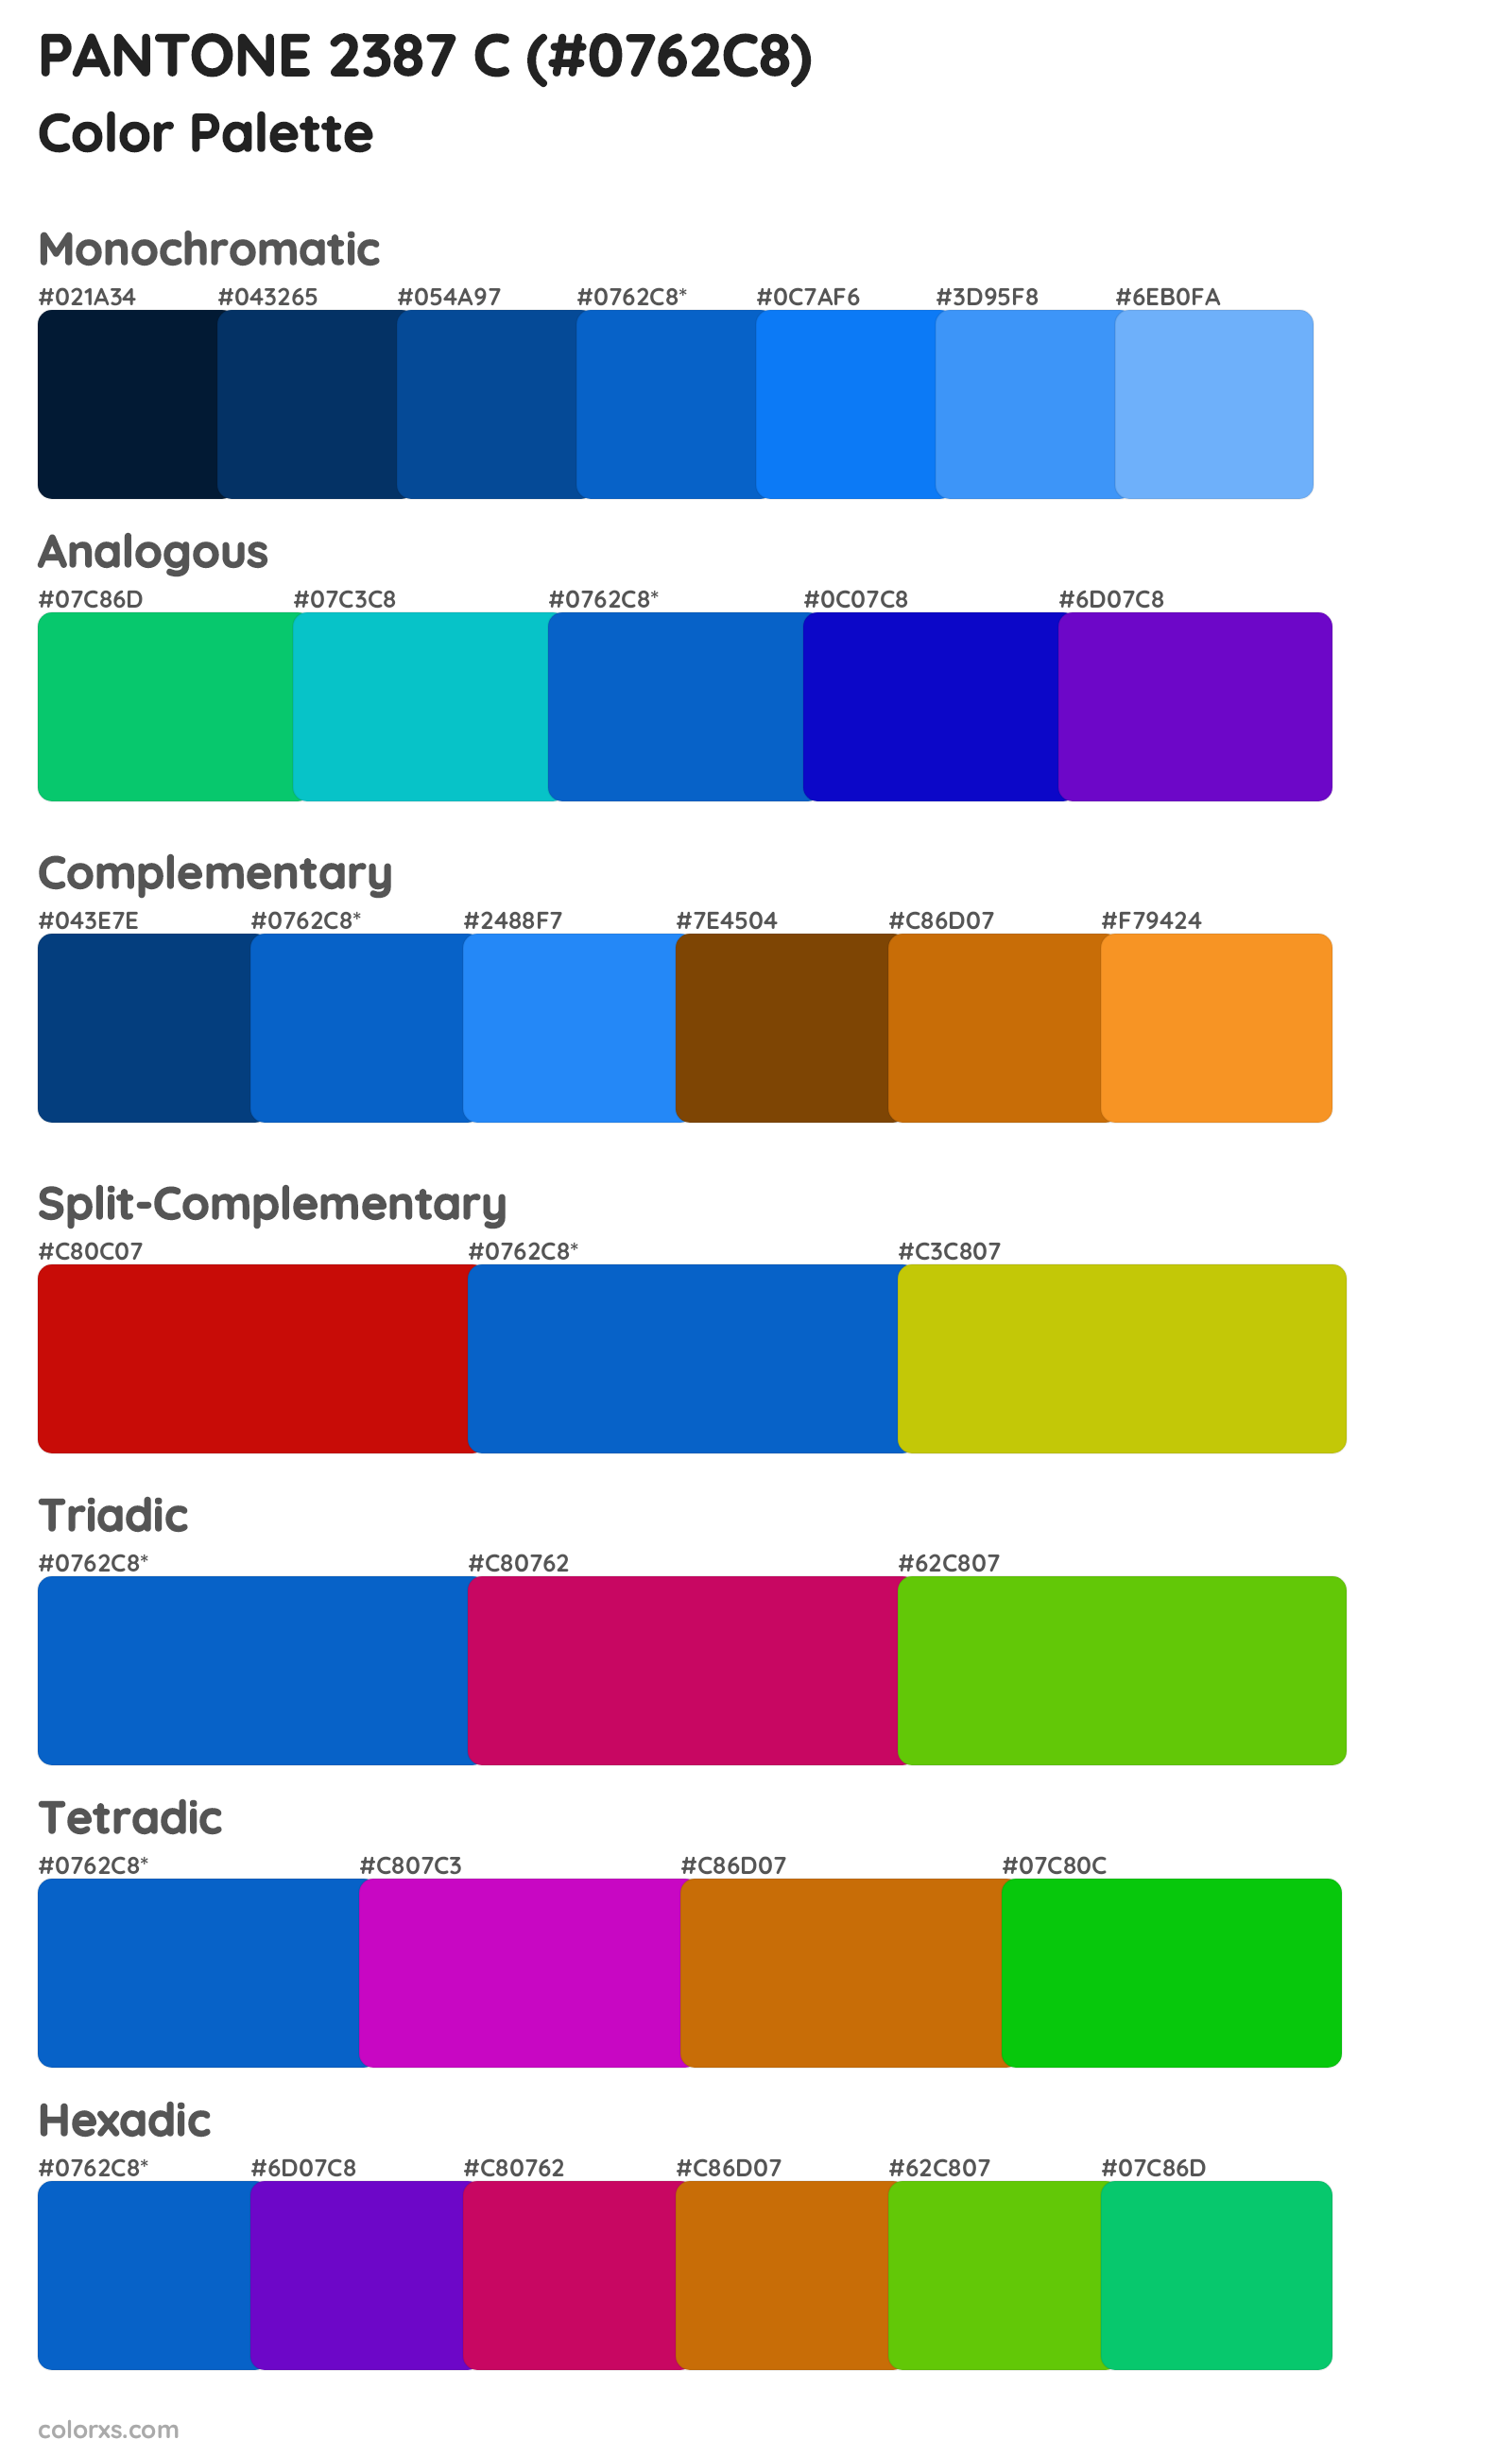 PANTONE 2387 C Color Scheme Palettes